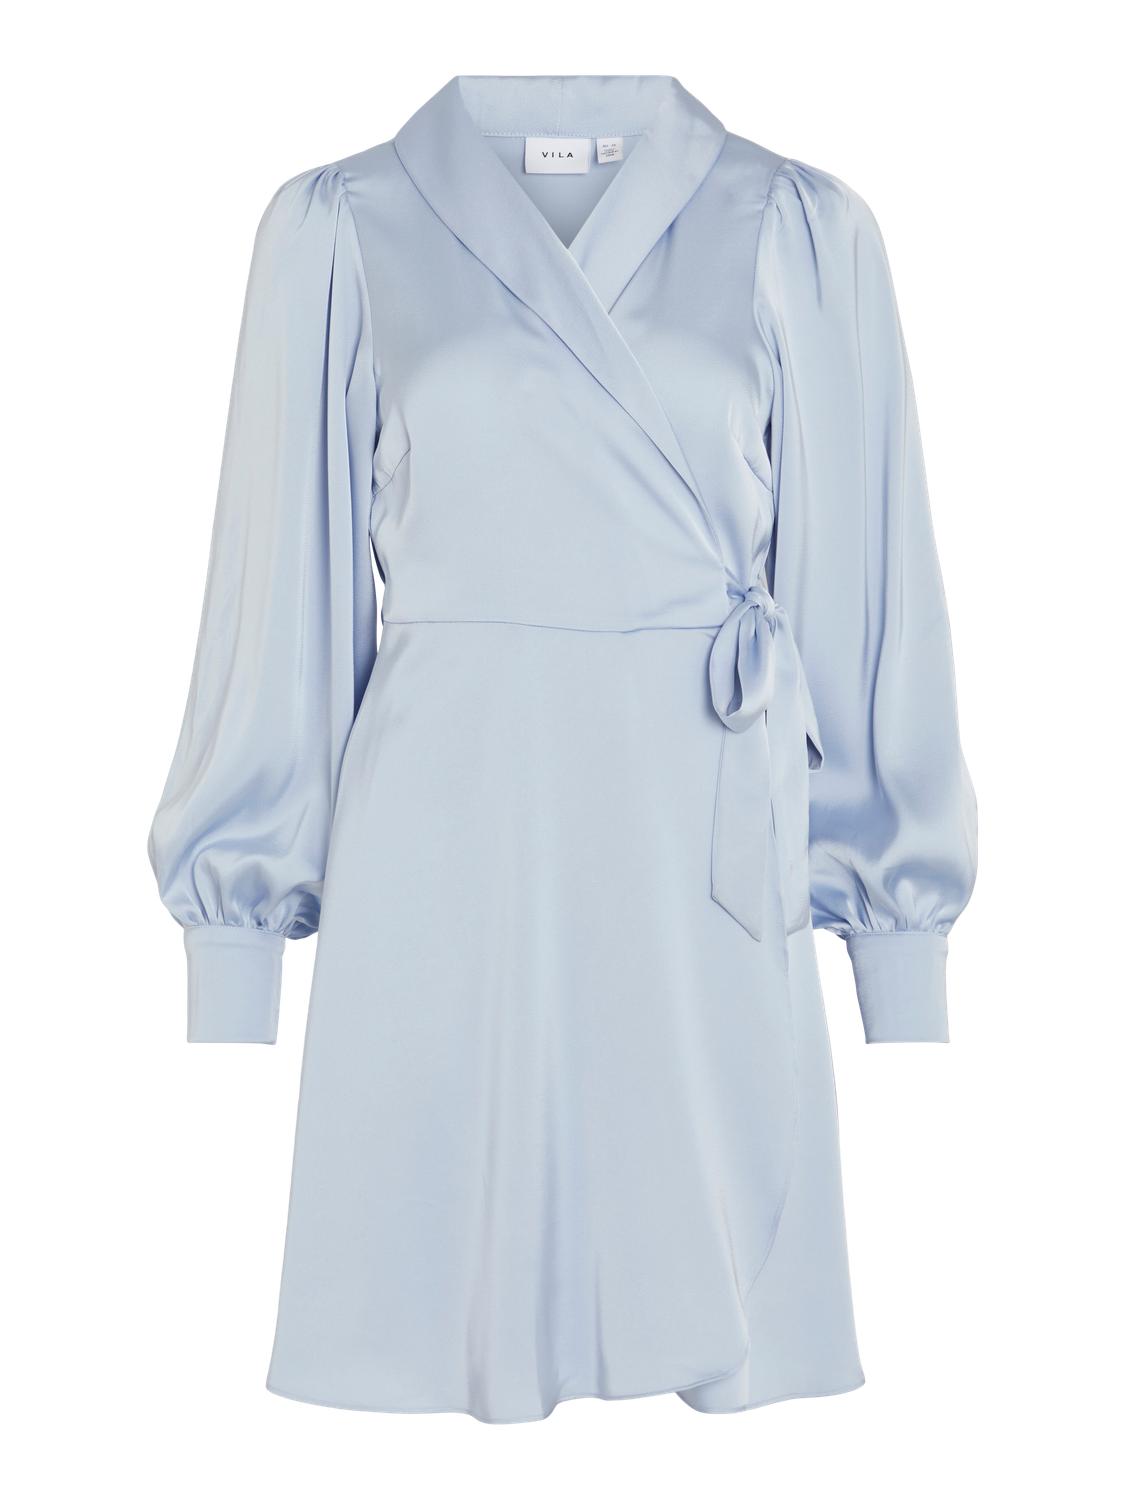 VIENNA Dress - Kentucky Blue